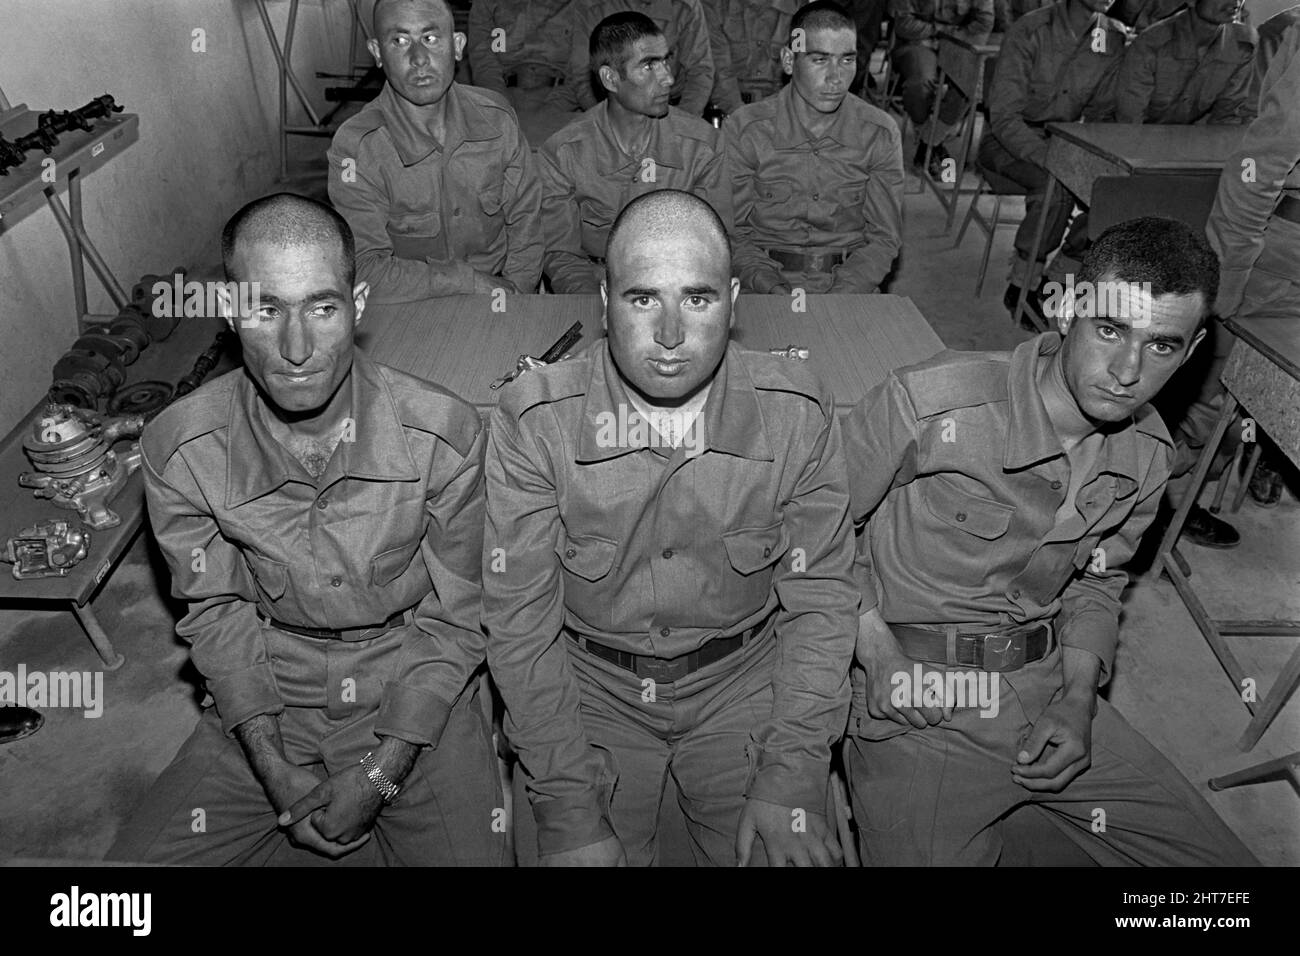 KABUL, AFGHANISTAN. 30.. April 1988. Wehrpflichtige der afghanischen Armee während der militärischen Ausbildung im Militärtechnischen Zentrum Nr. 59 am 30. April 1988 außerhalb von Kabul, Afghanistan. Die Männer wurden in die Armee eingezogen, um gegen die Mudschaheddin zu kämpfen. Stockfoto